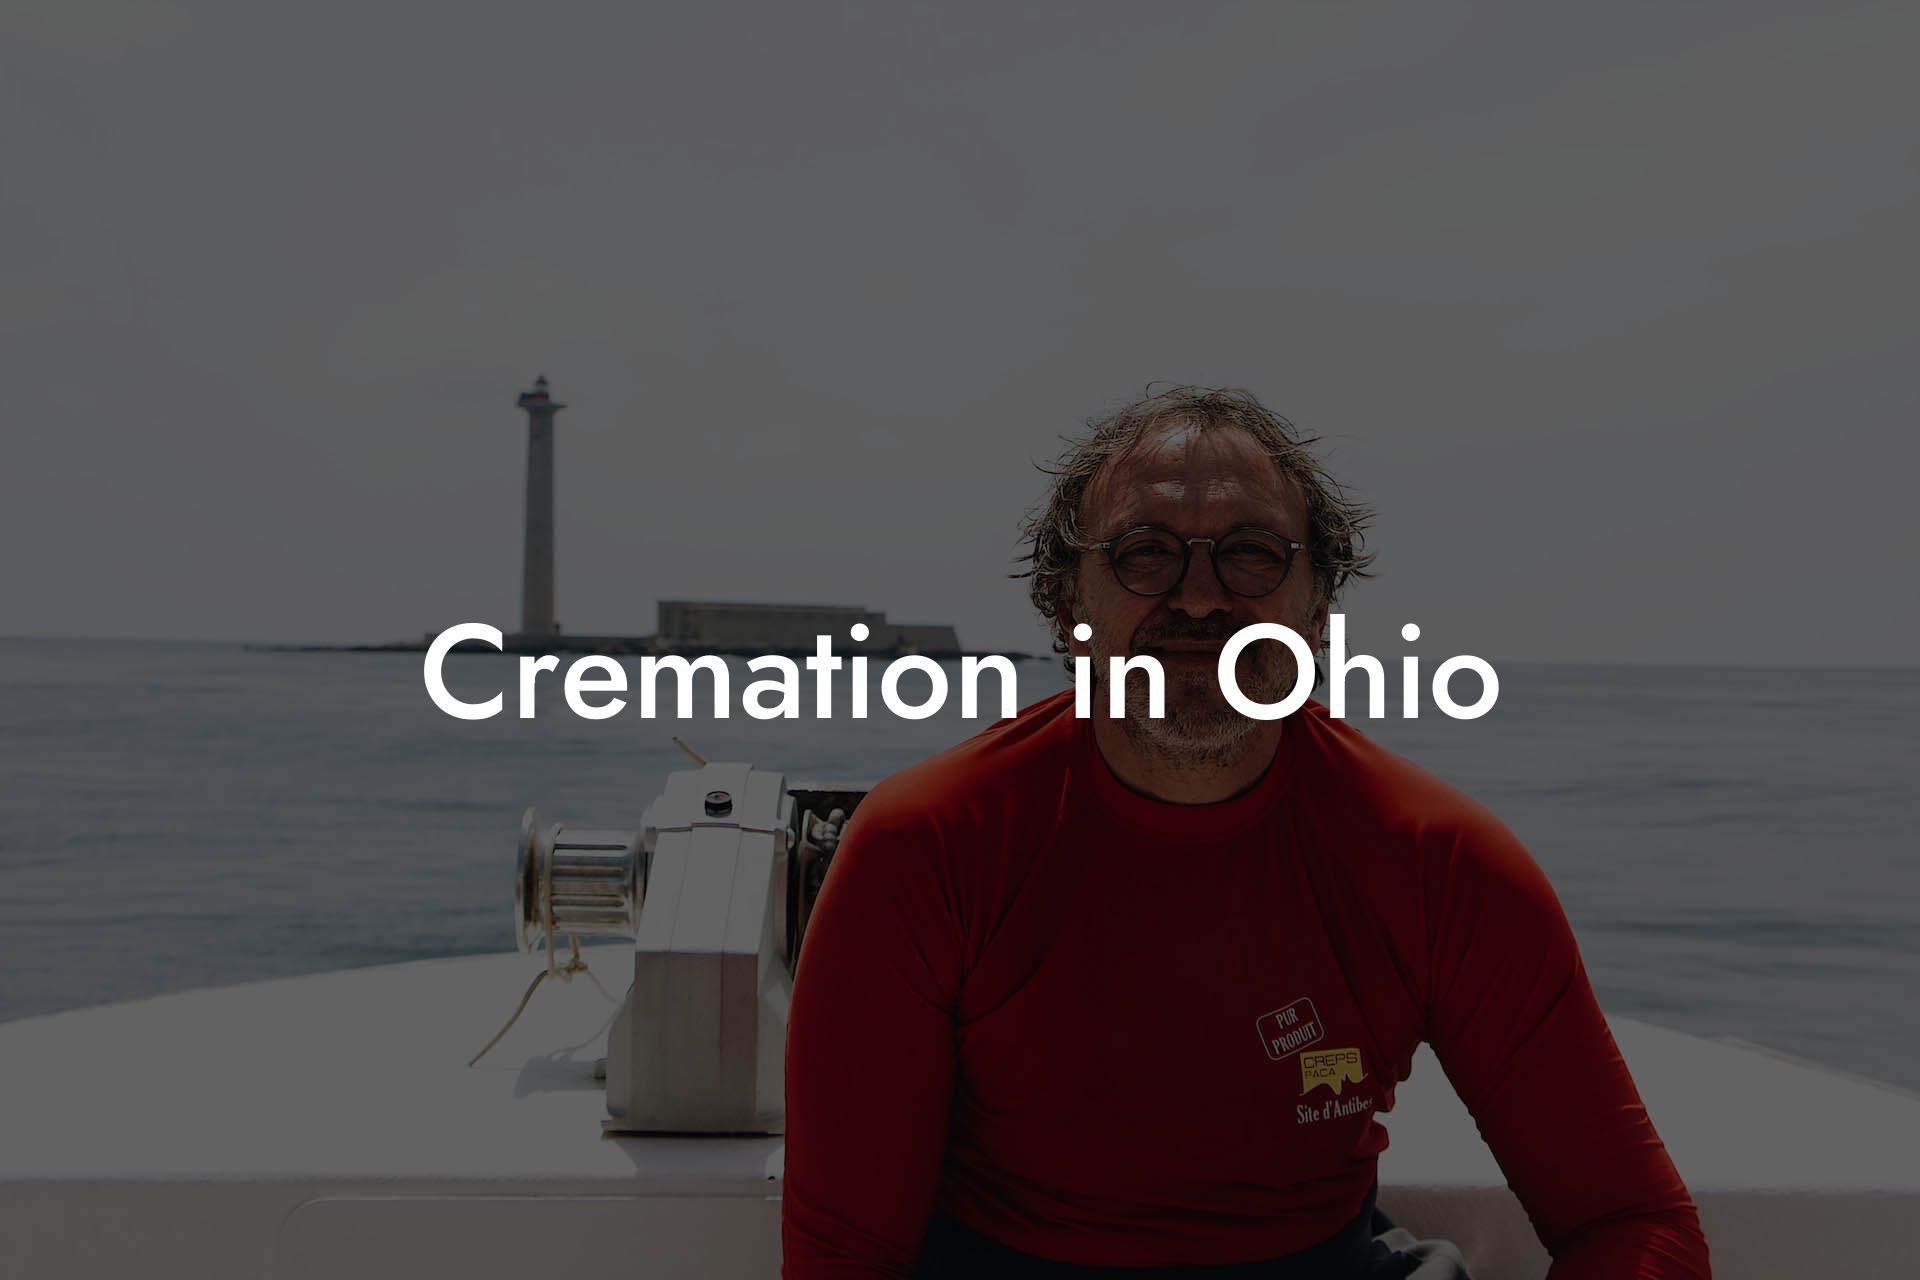 Cremation in Ohio